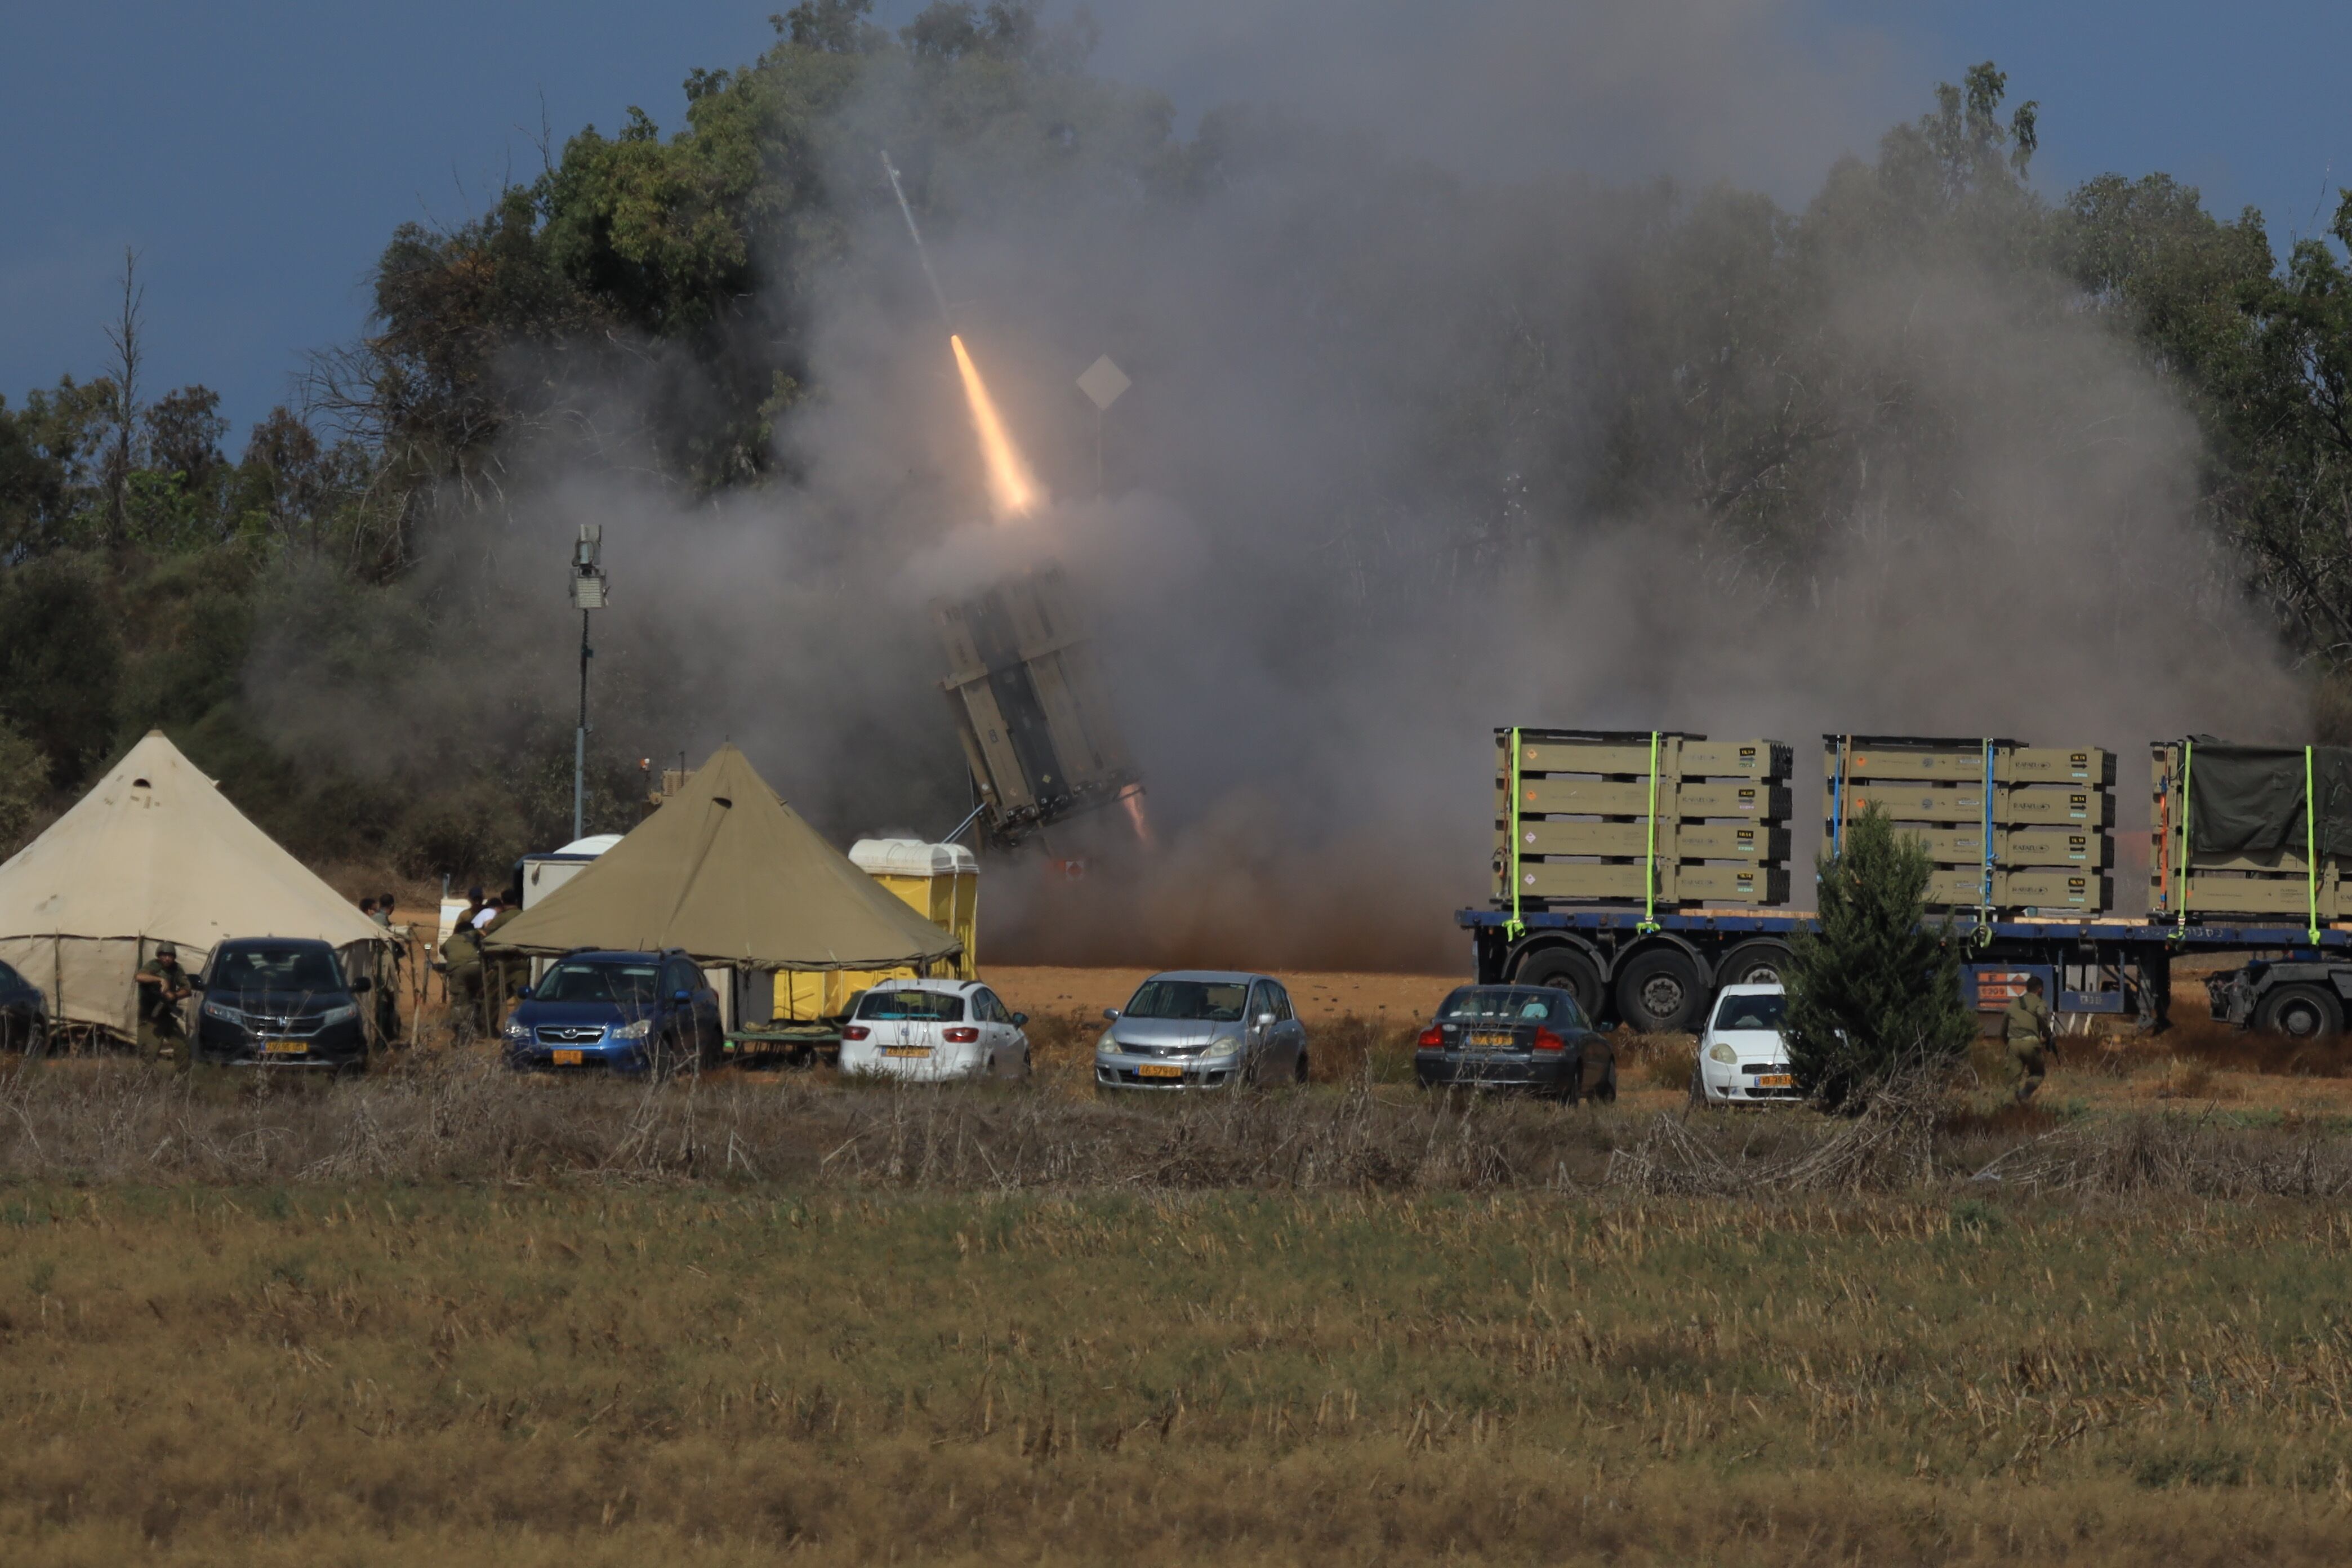 Los cohetes disparados desde Gaza son neutralizados en el aire por el sistema de defensa aérea israelí Cúpula de Hierro, en la ciudad de Ashkelon.